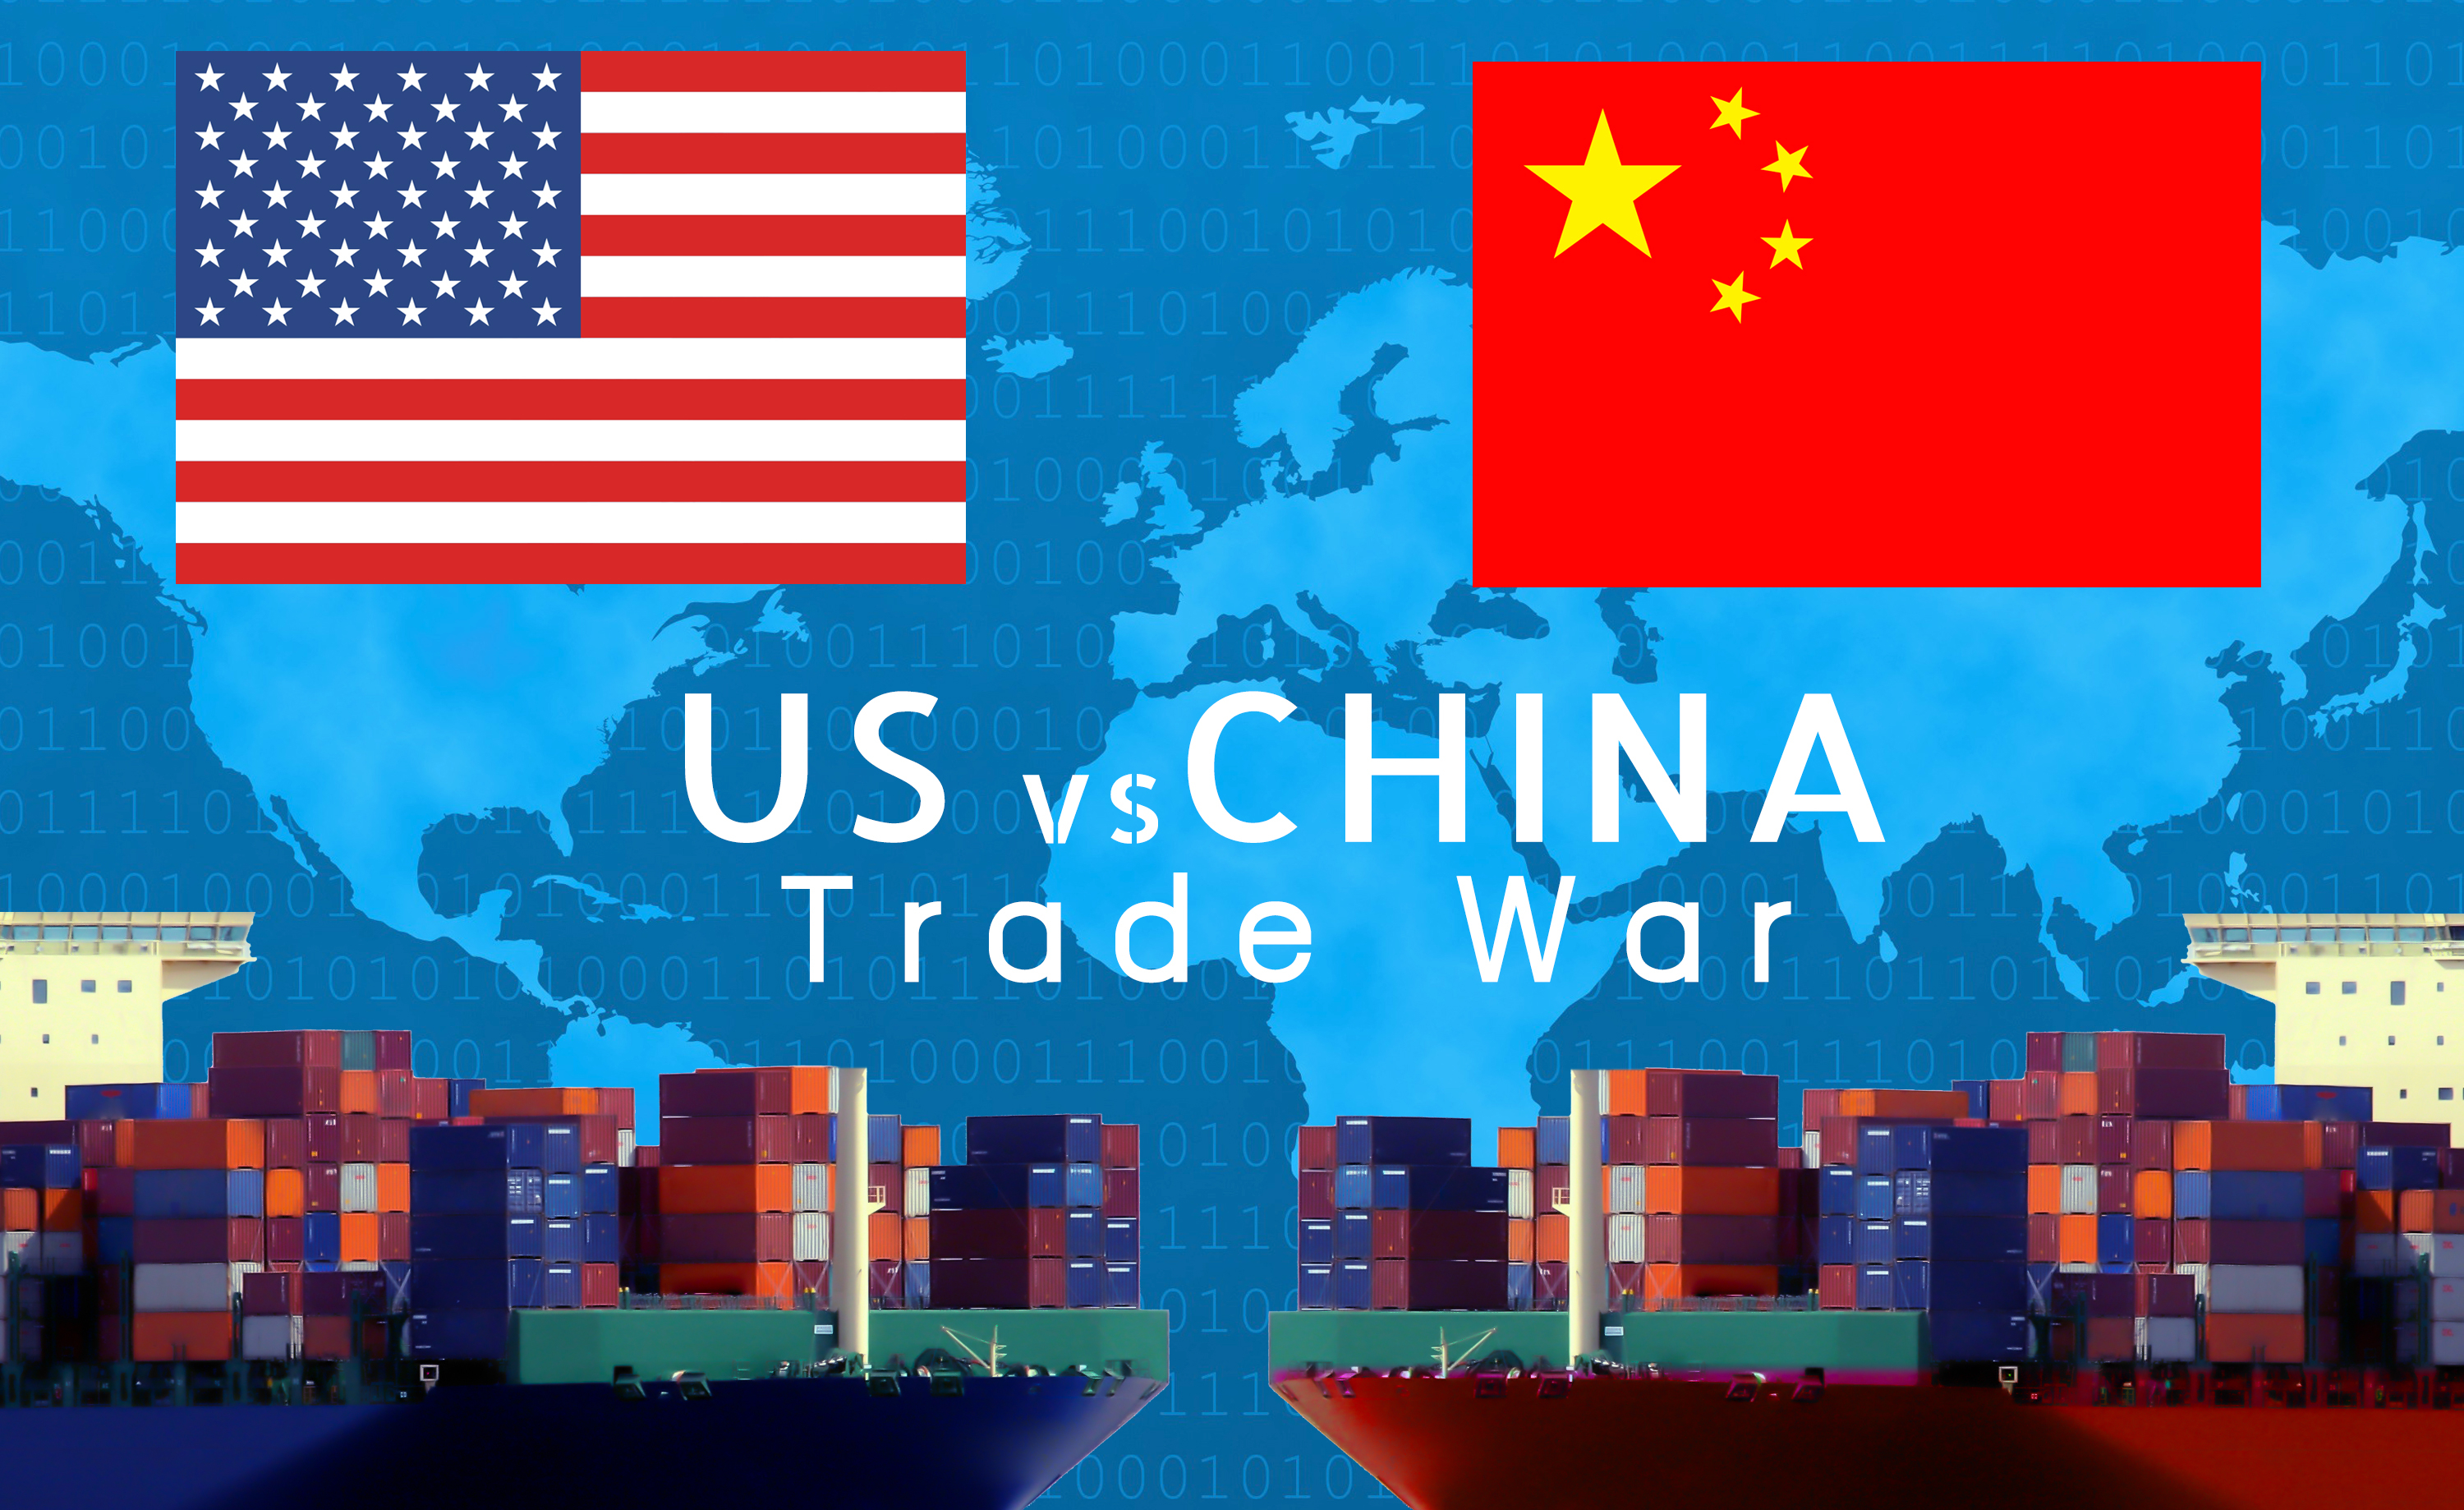 สรท.หวั่นสงครามการค้าปะทุหลังจีนฟ้อง WTO